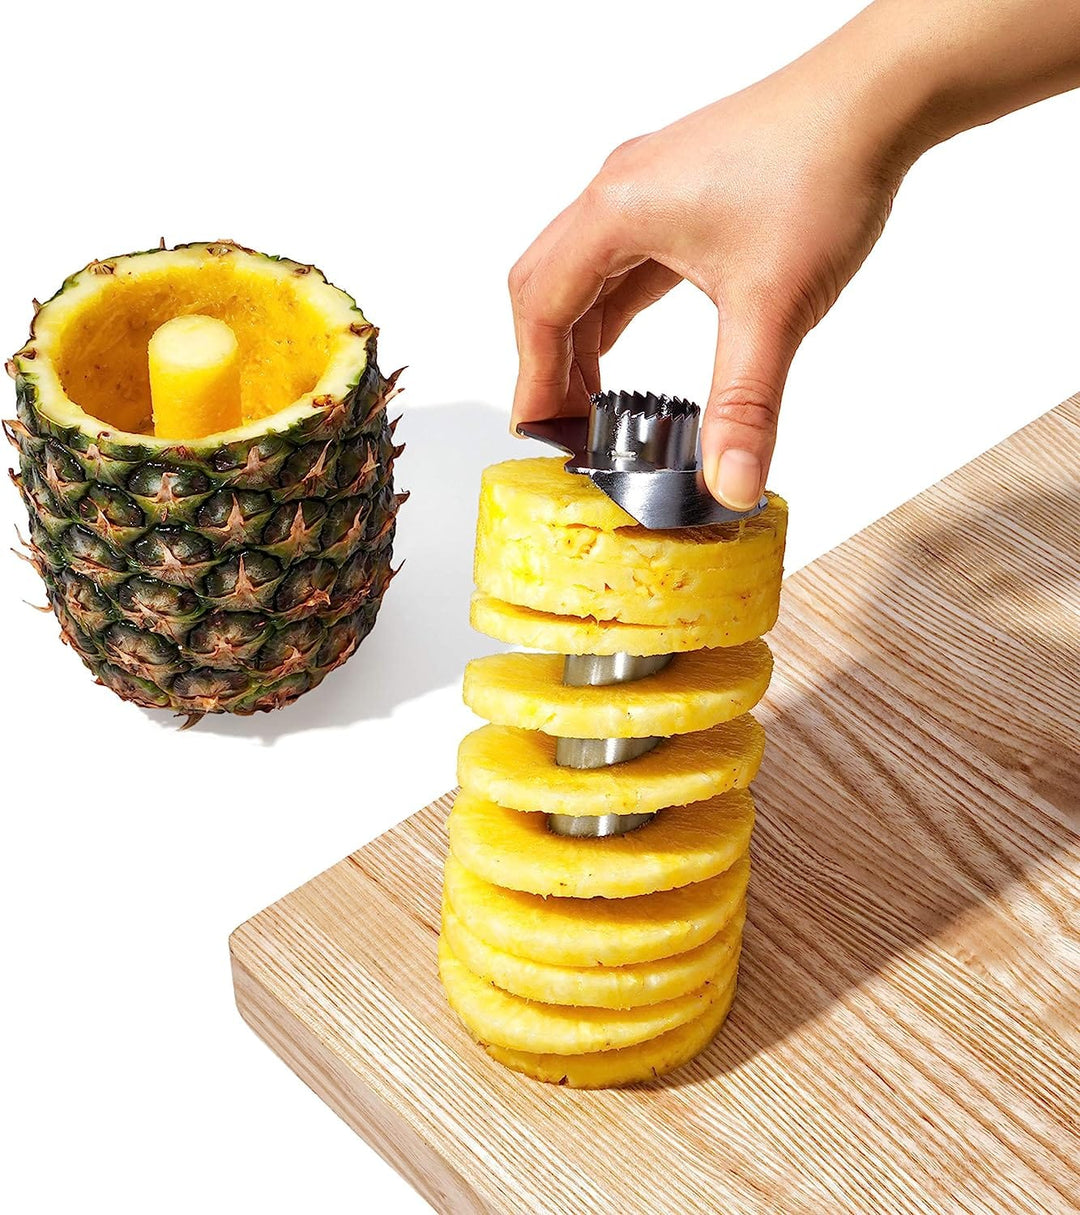 OXO OXO Pineapple Corer & Slicer